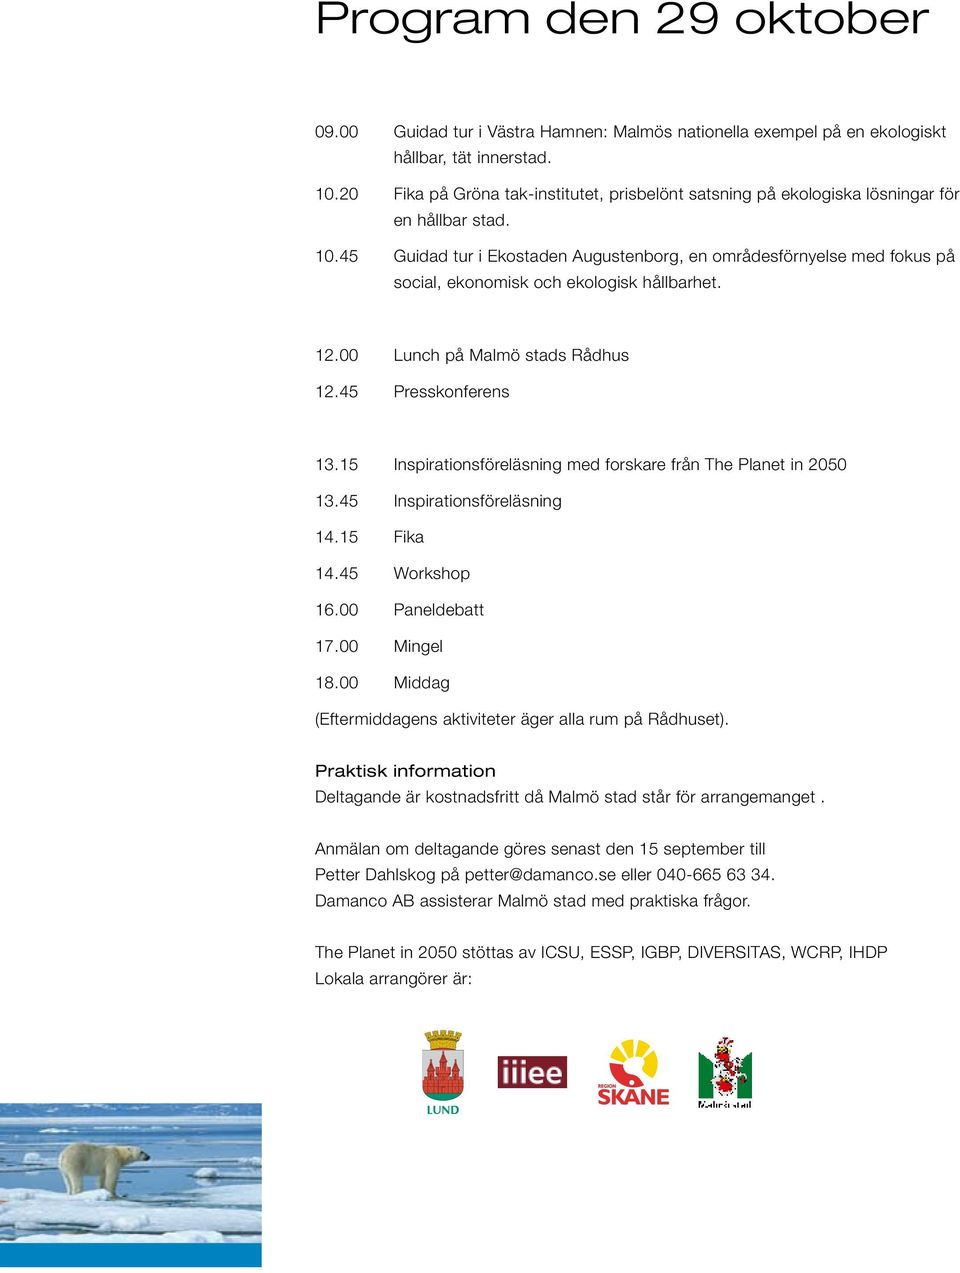 45 Guidad tur i Ekostaden Augustenborg, en områdesförnyelse med fokus på social, ekonomisk och ekologisk hållbarhet. 12.00 Lunch på Malmö stads Rådhus 12.45 Presskonferens 13.